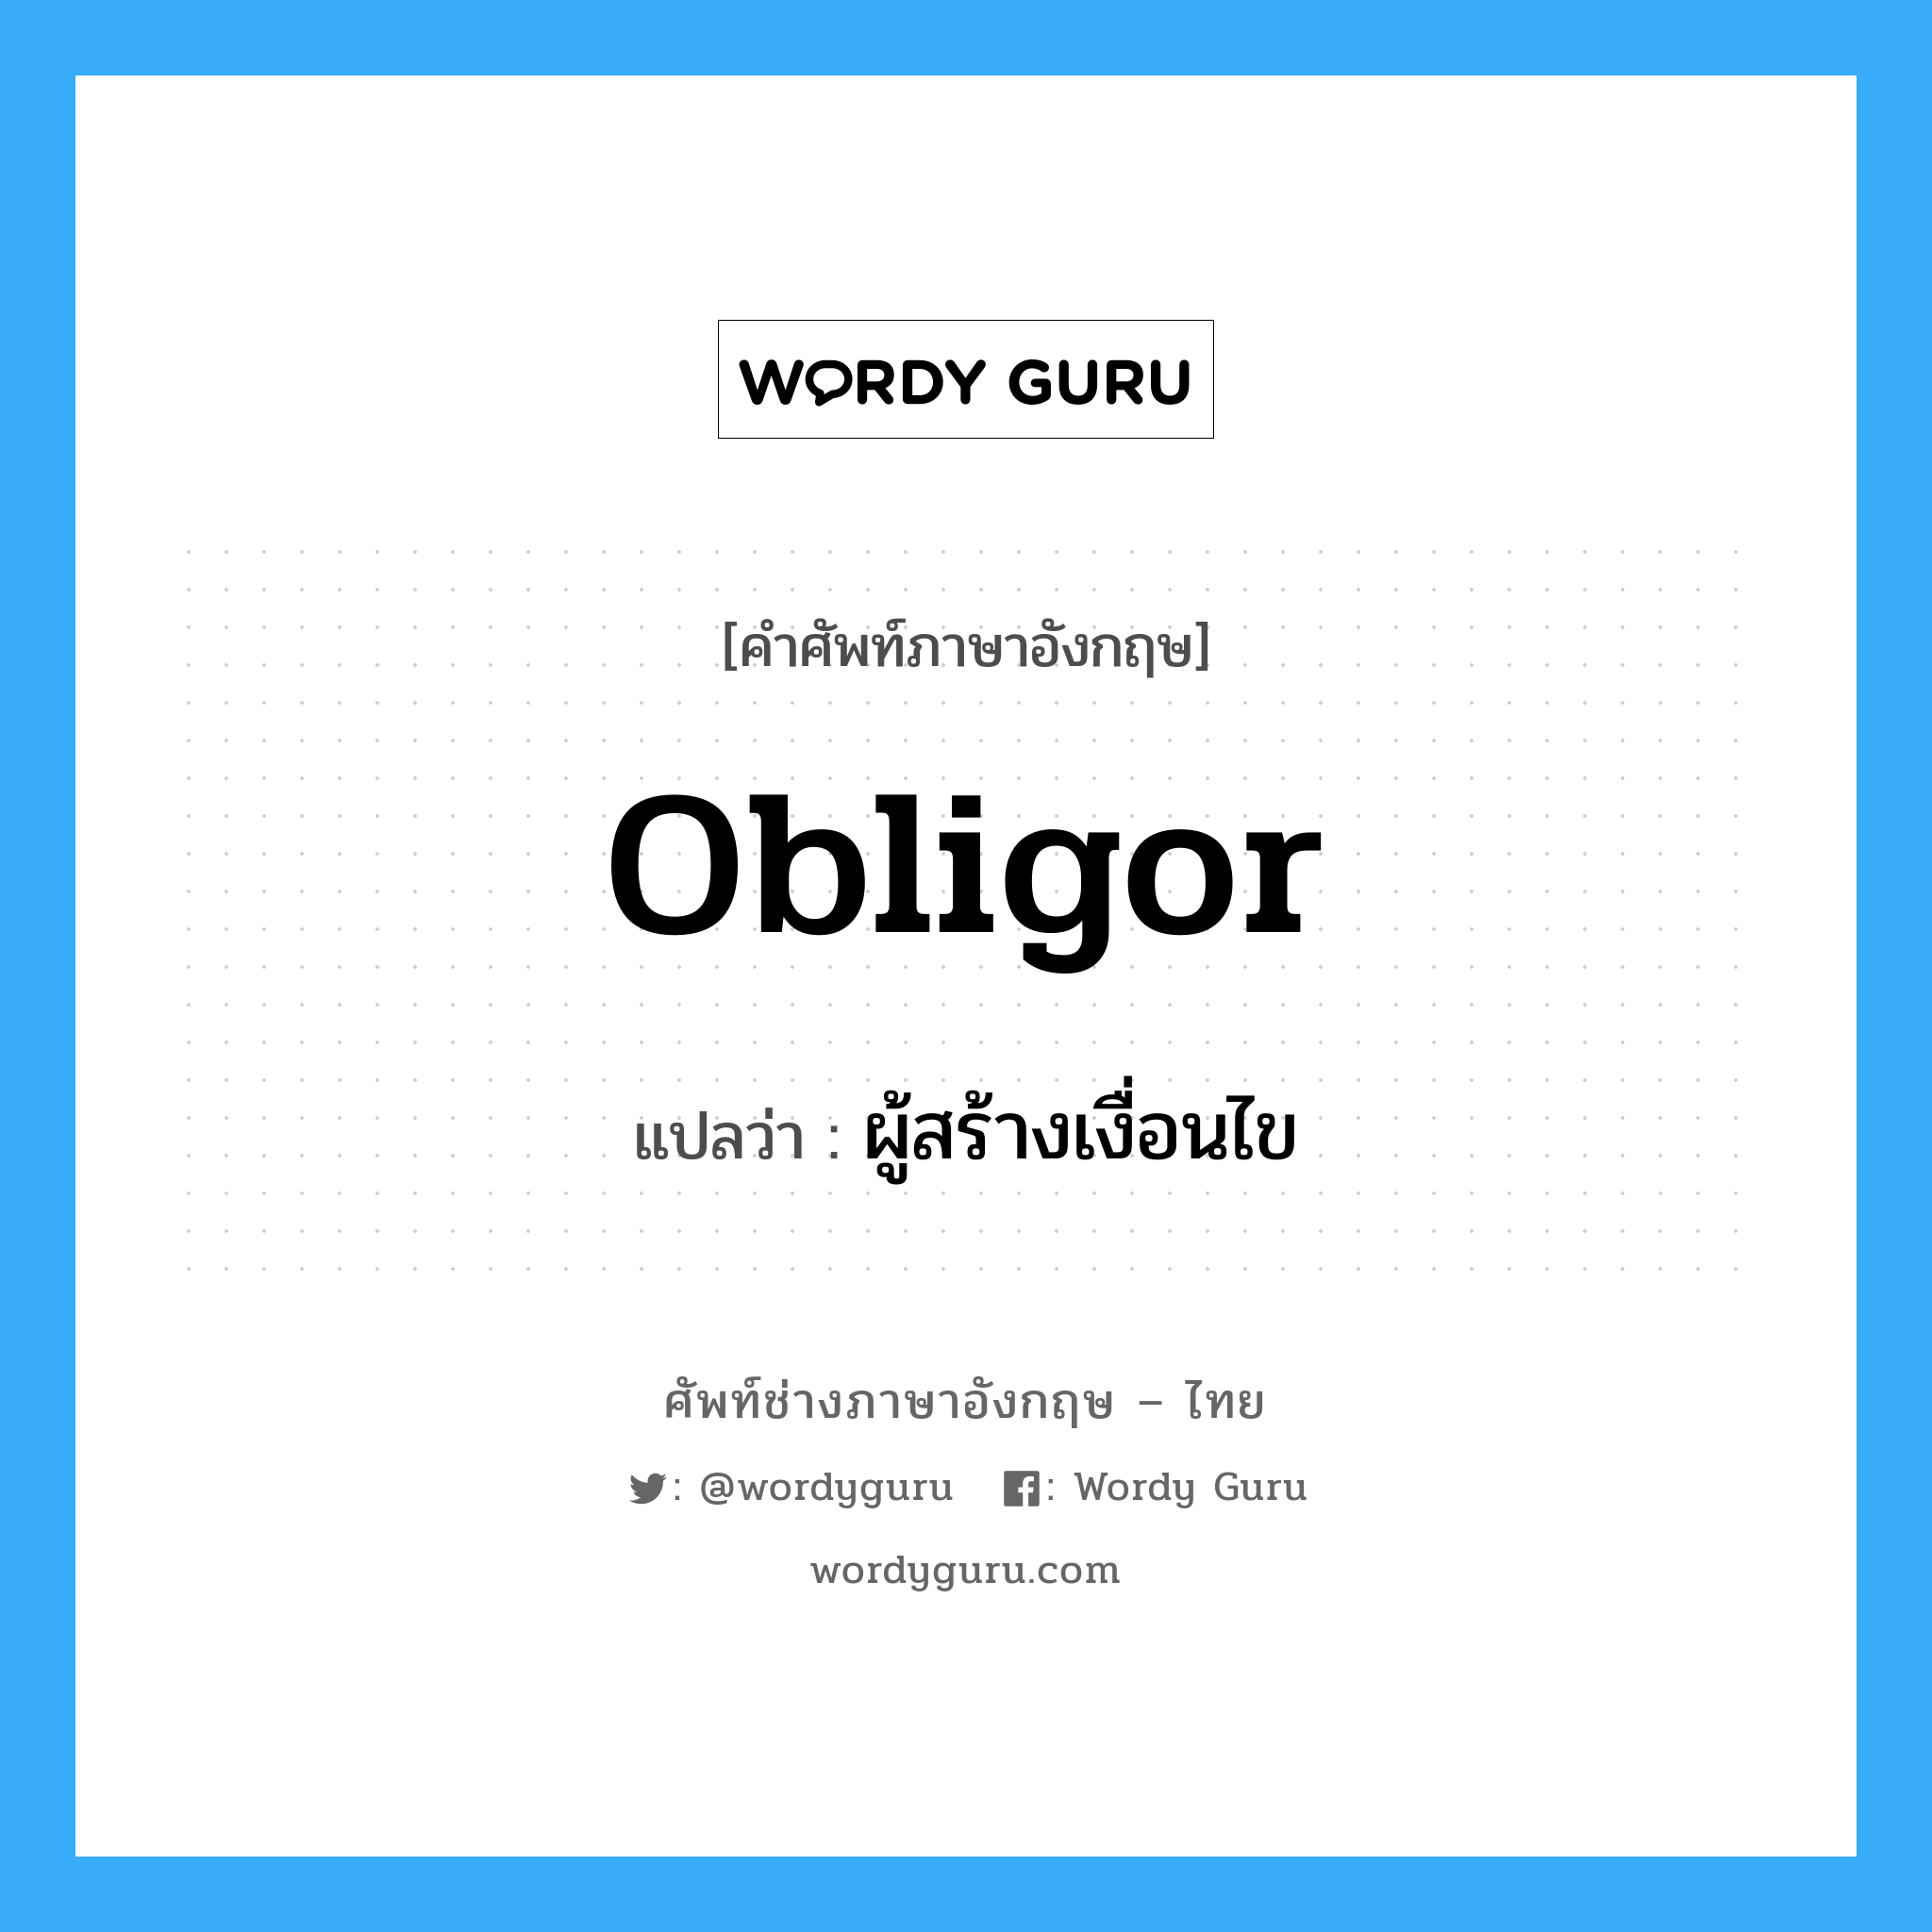 ผู้สร้างเงื่อนไข ภาษาอังกฤษ?, คำศัพท์ช่างภาษาอังกฤษ - ไทย ผู้สร้างเงื่อนไข คำศัพท์ภาษาอังกฤษ ผู้สร้างเงื่อนไข แปลว่า Obligor